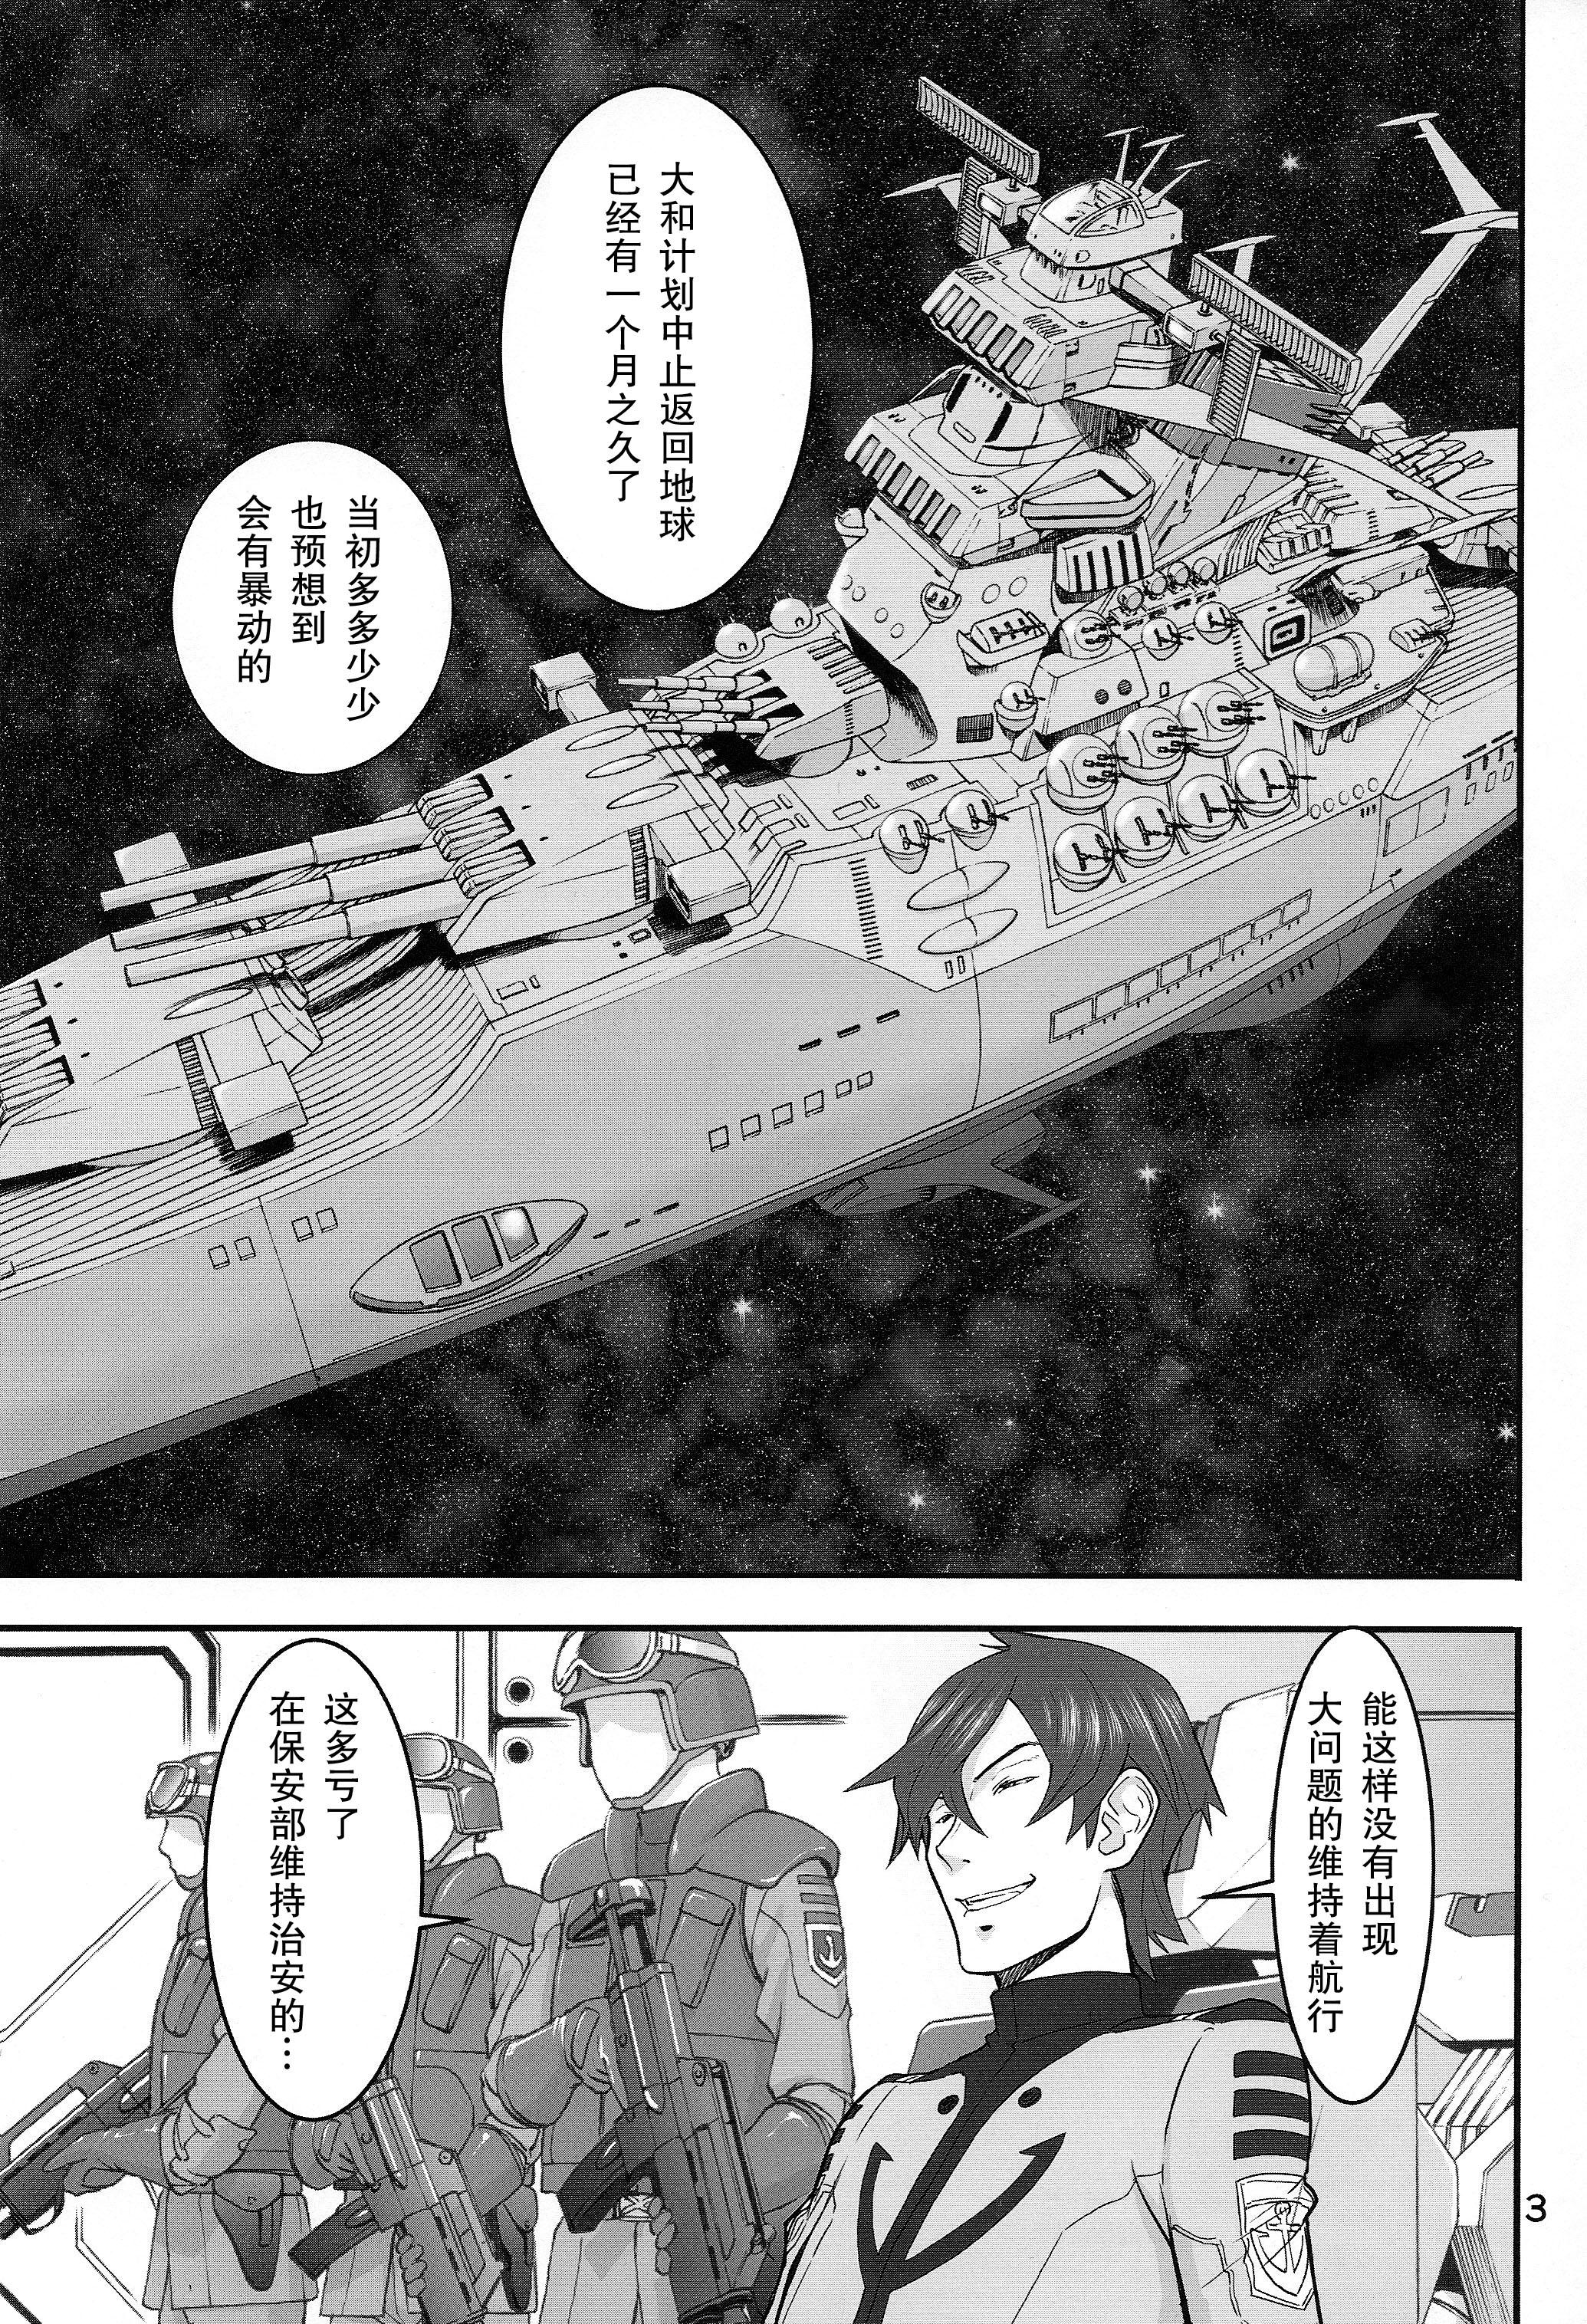 Girl Kan Kan Nisshi - Space battleship yamato Cosplay - Page 2